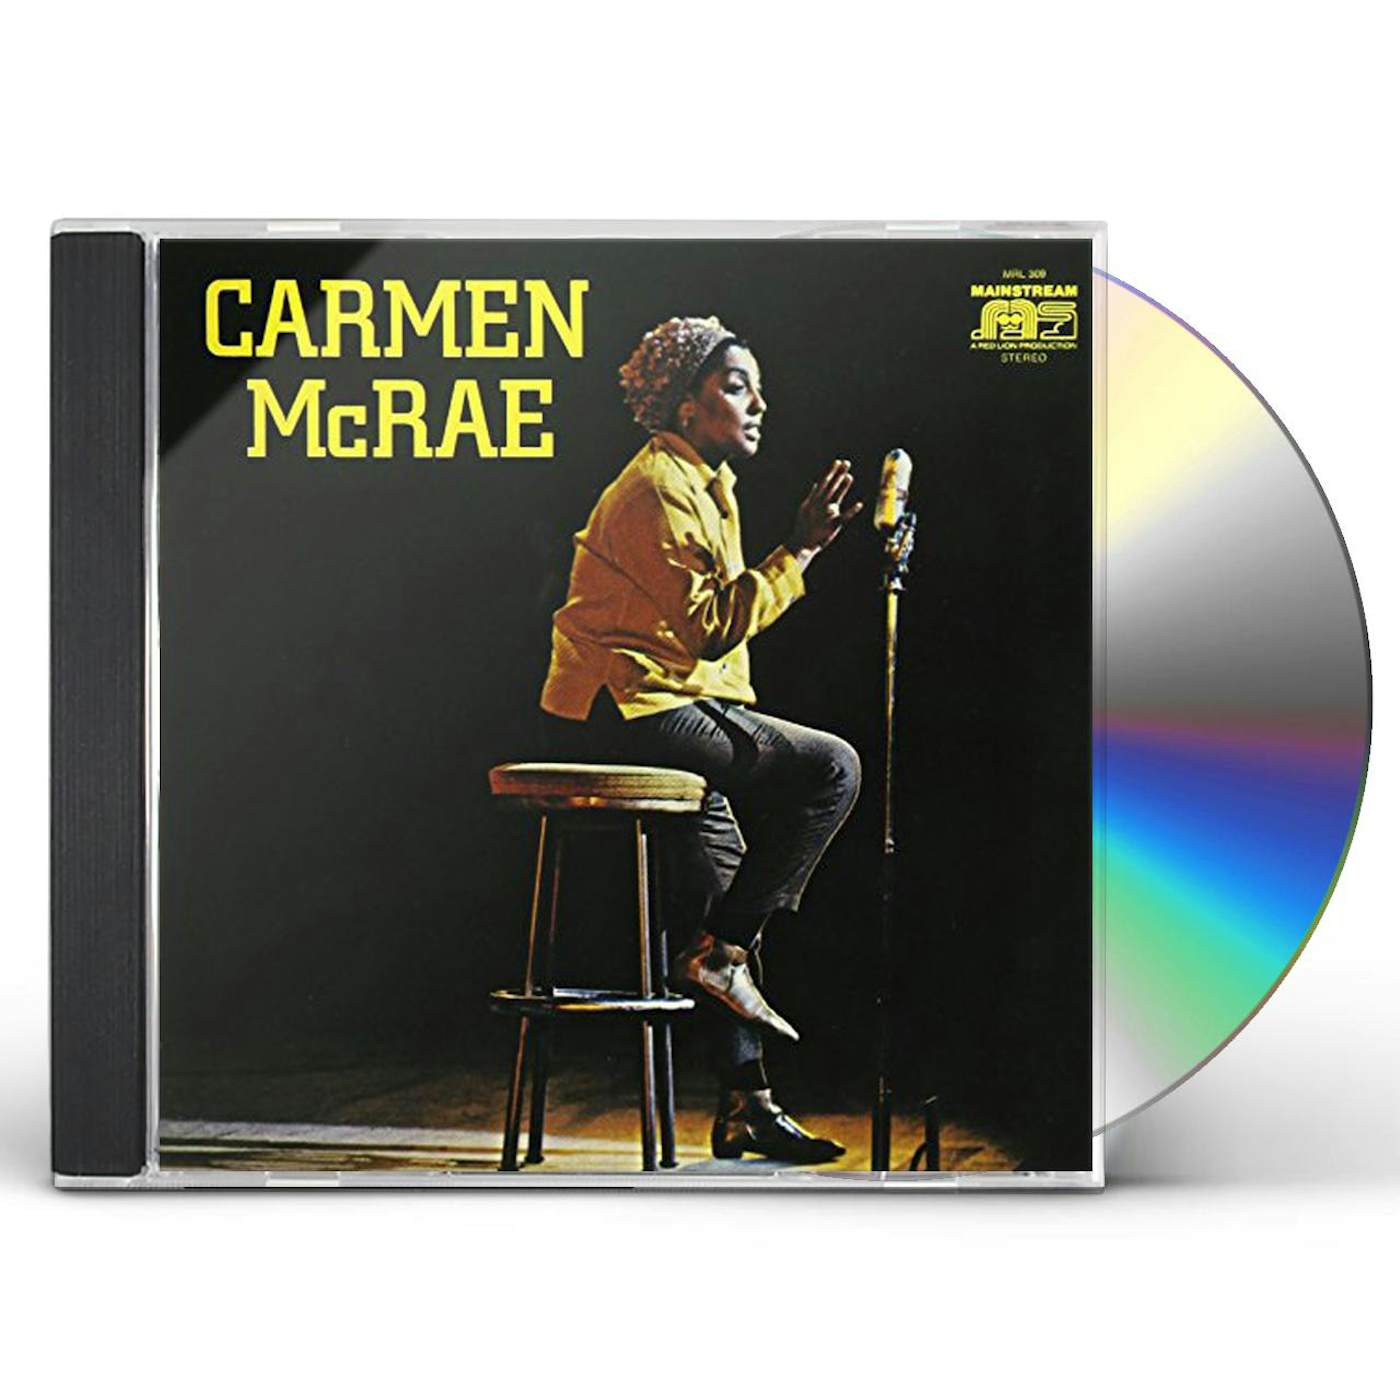 CARMEN MCRAE CD